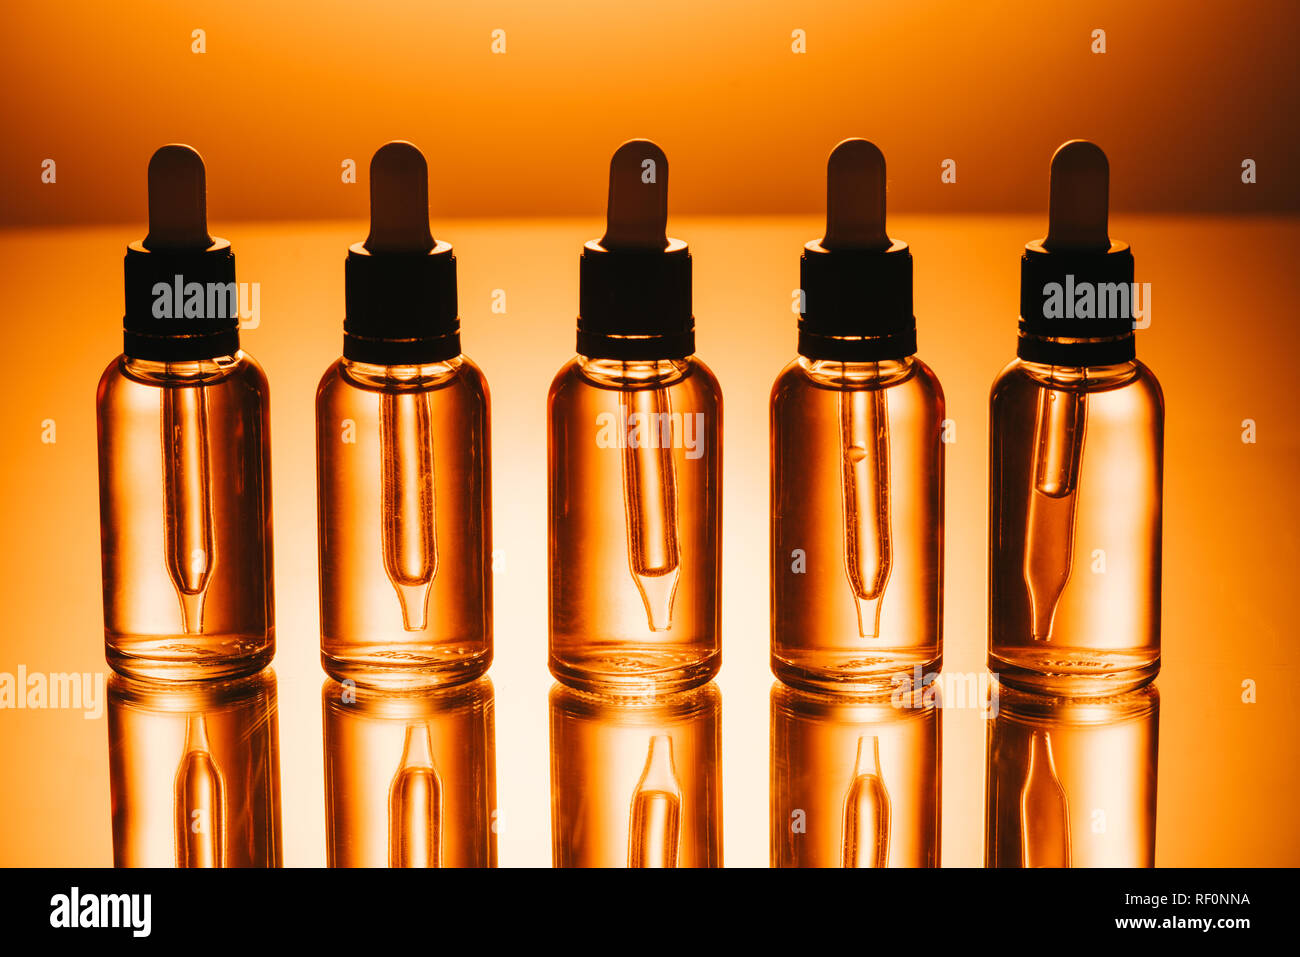 Fila de cbd aceite en botellas con cuentagotas sobre fondo naranja Foto de stock